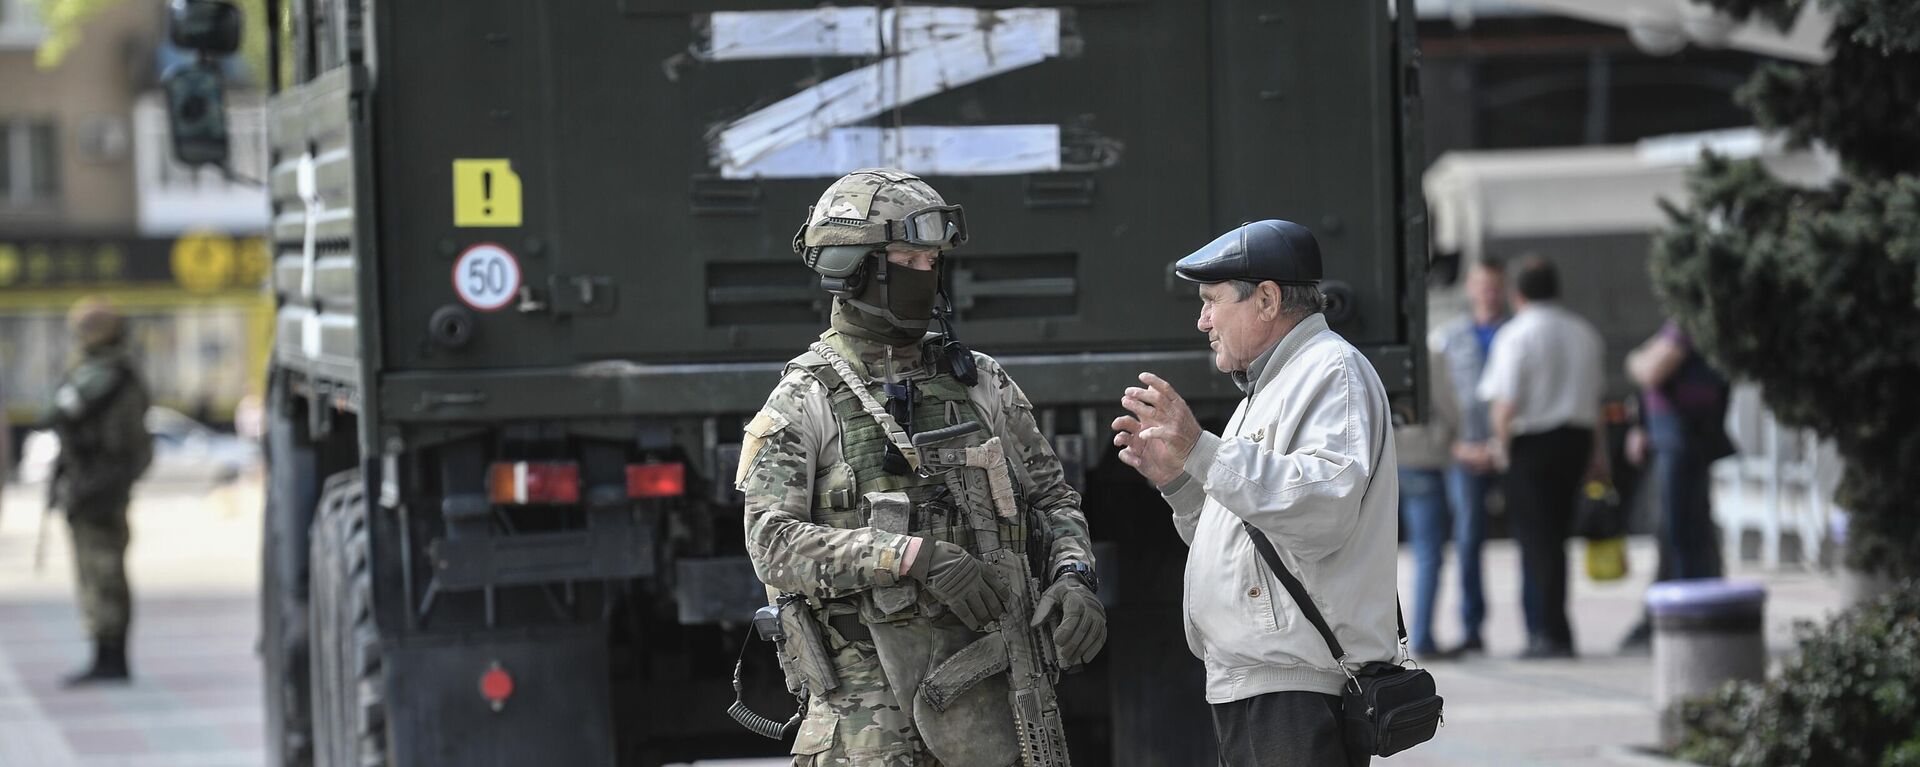 Un hombre está hablando con un militar ruso en Melitópol durante la operación especial militar de Rusia en Ucrania - Sputnik Mundo, 1920, 04.05.2022